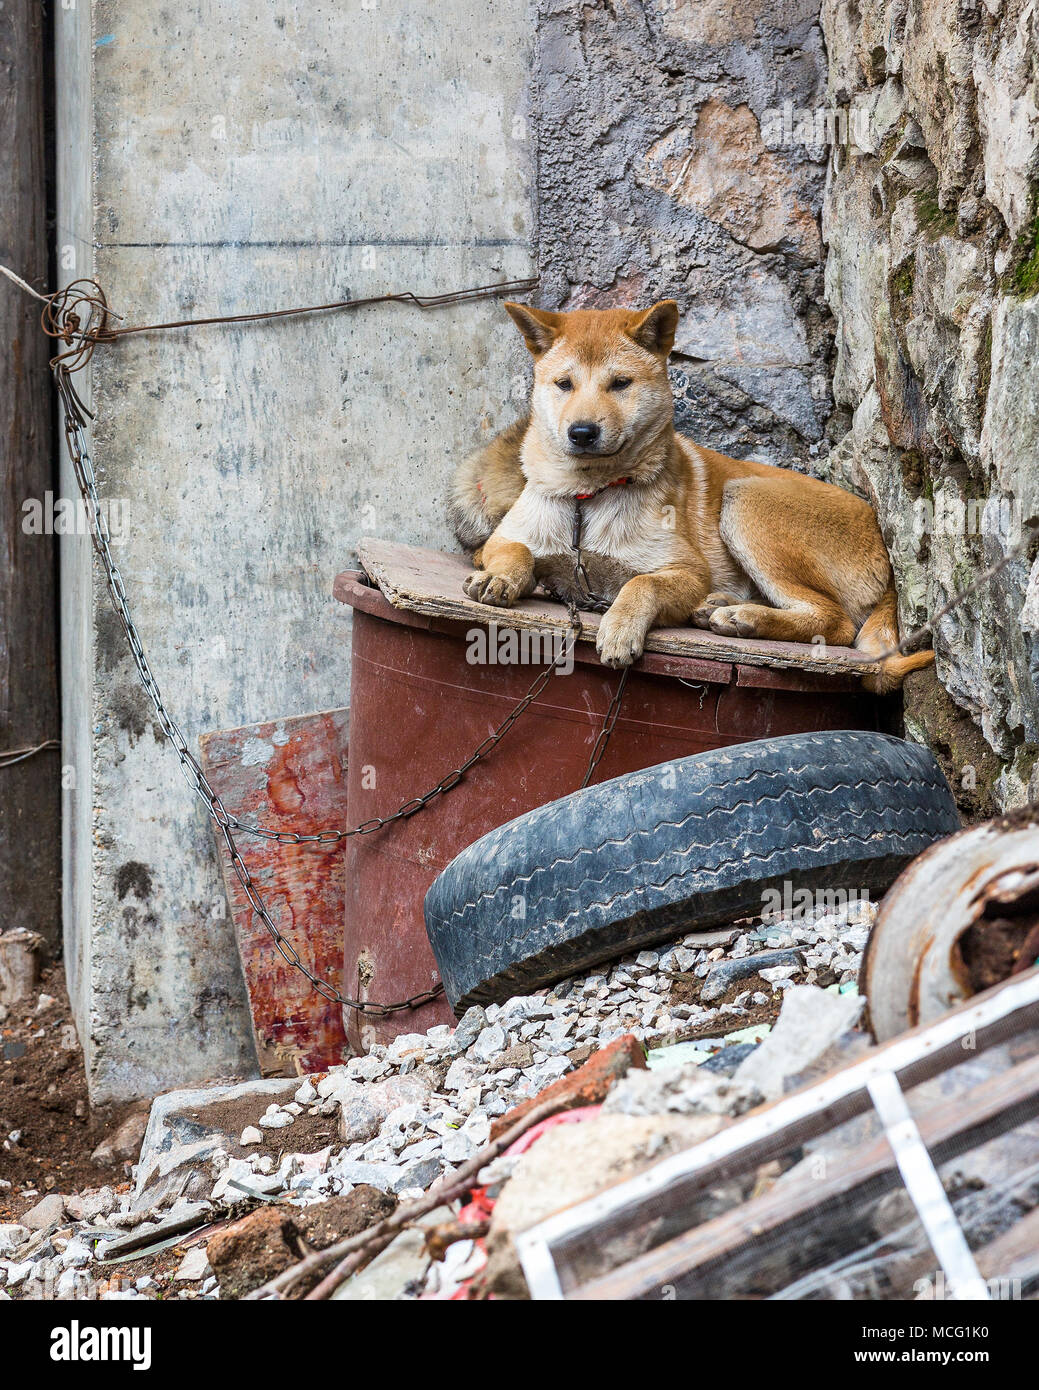 Un chien de garde de couleur d'or couché sur un morceau de bois entre les quelques gravats. Le chien est enchaîné à un mur et est attentif à ses alentours. Banque D'Images